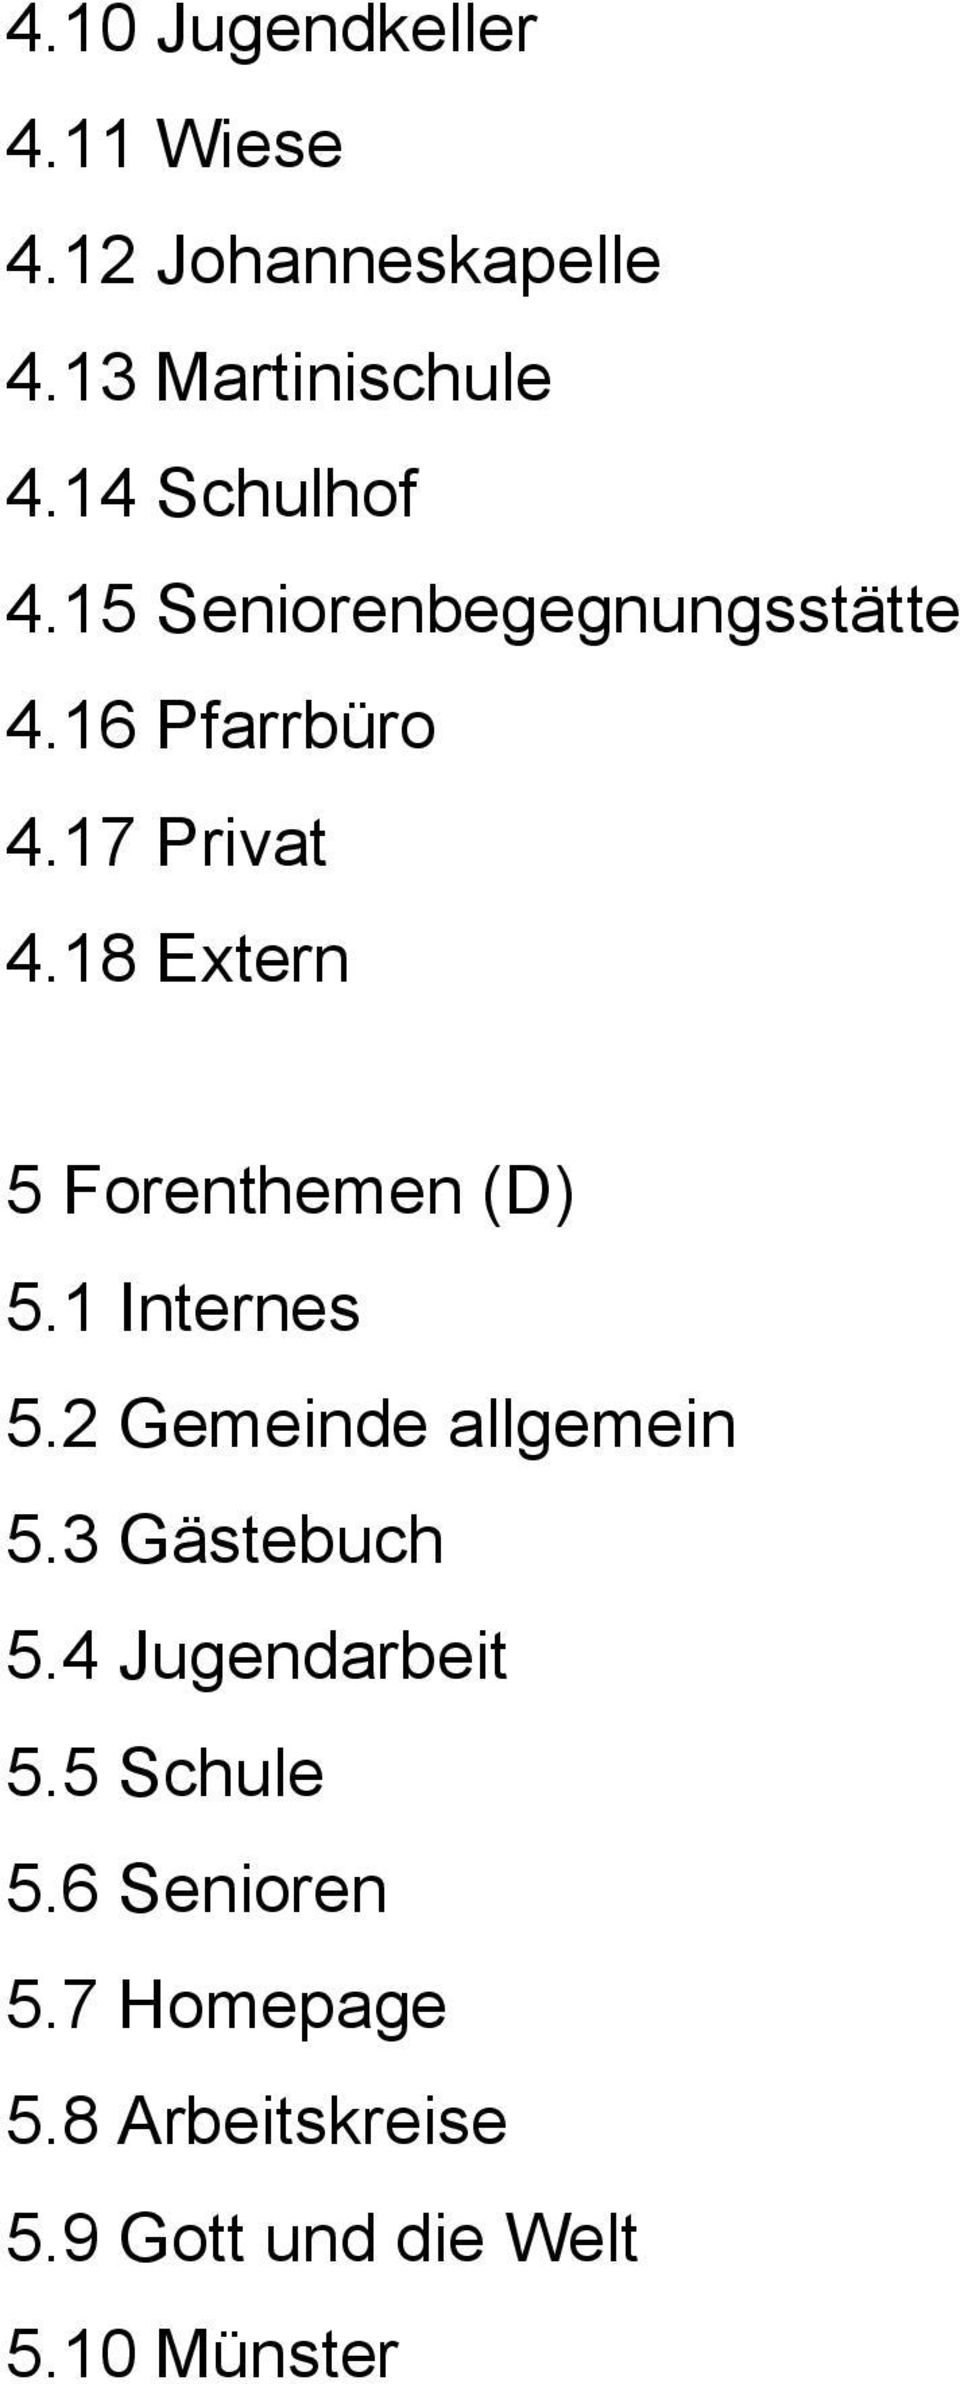 18 Extern 5 Forenthemen (D) 5.1 Internes 5.2 Gemeinde allgemein 5.3 Gästebuch 5.